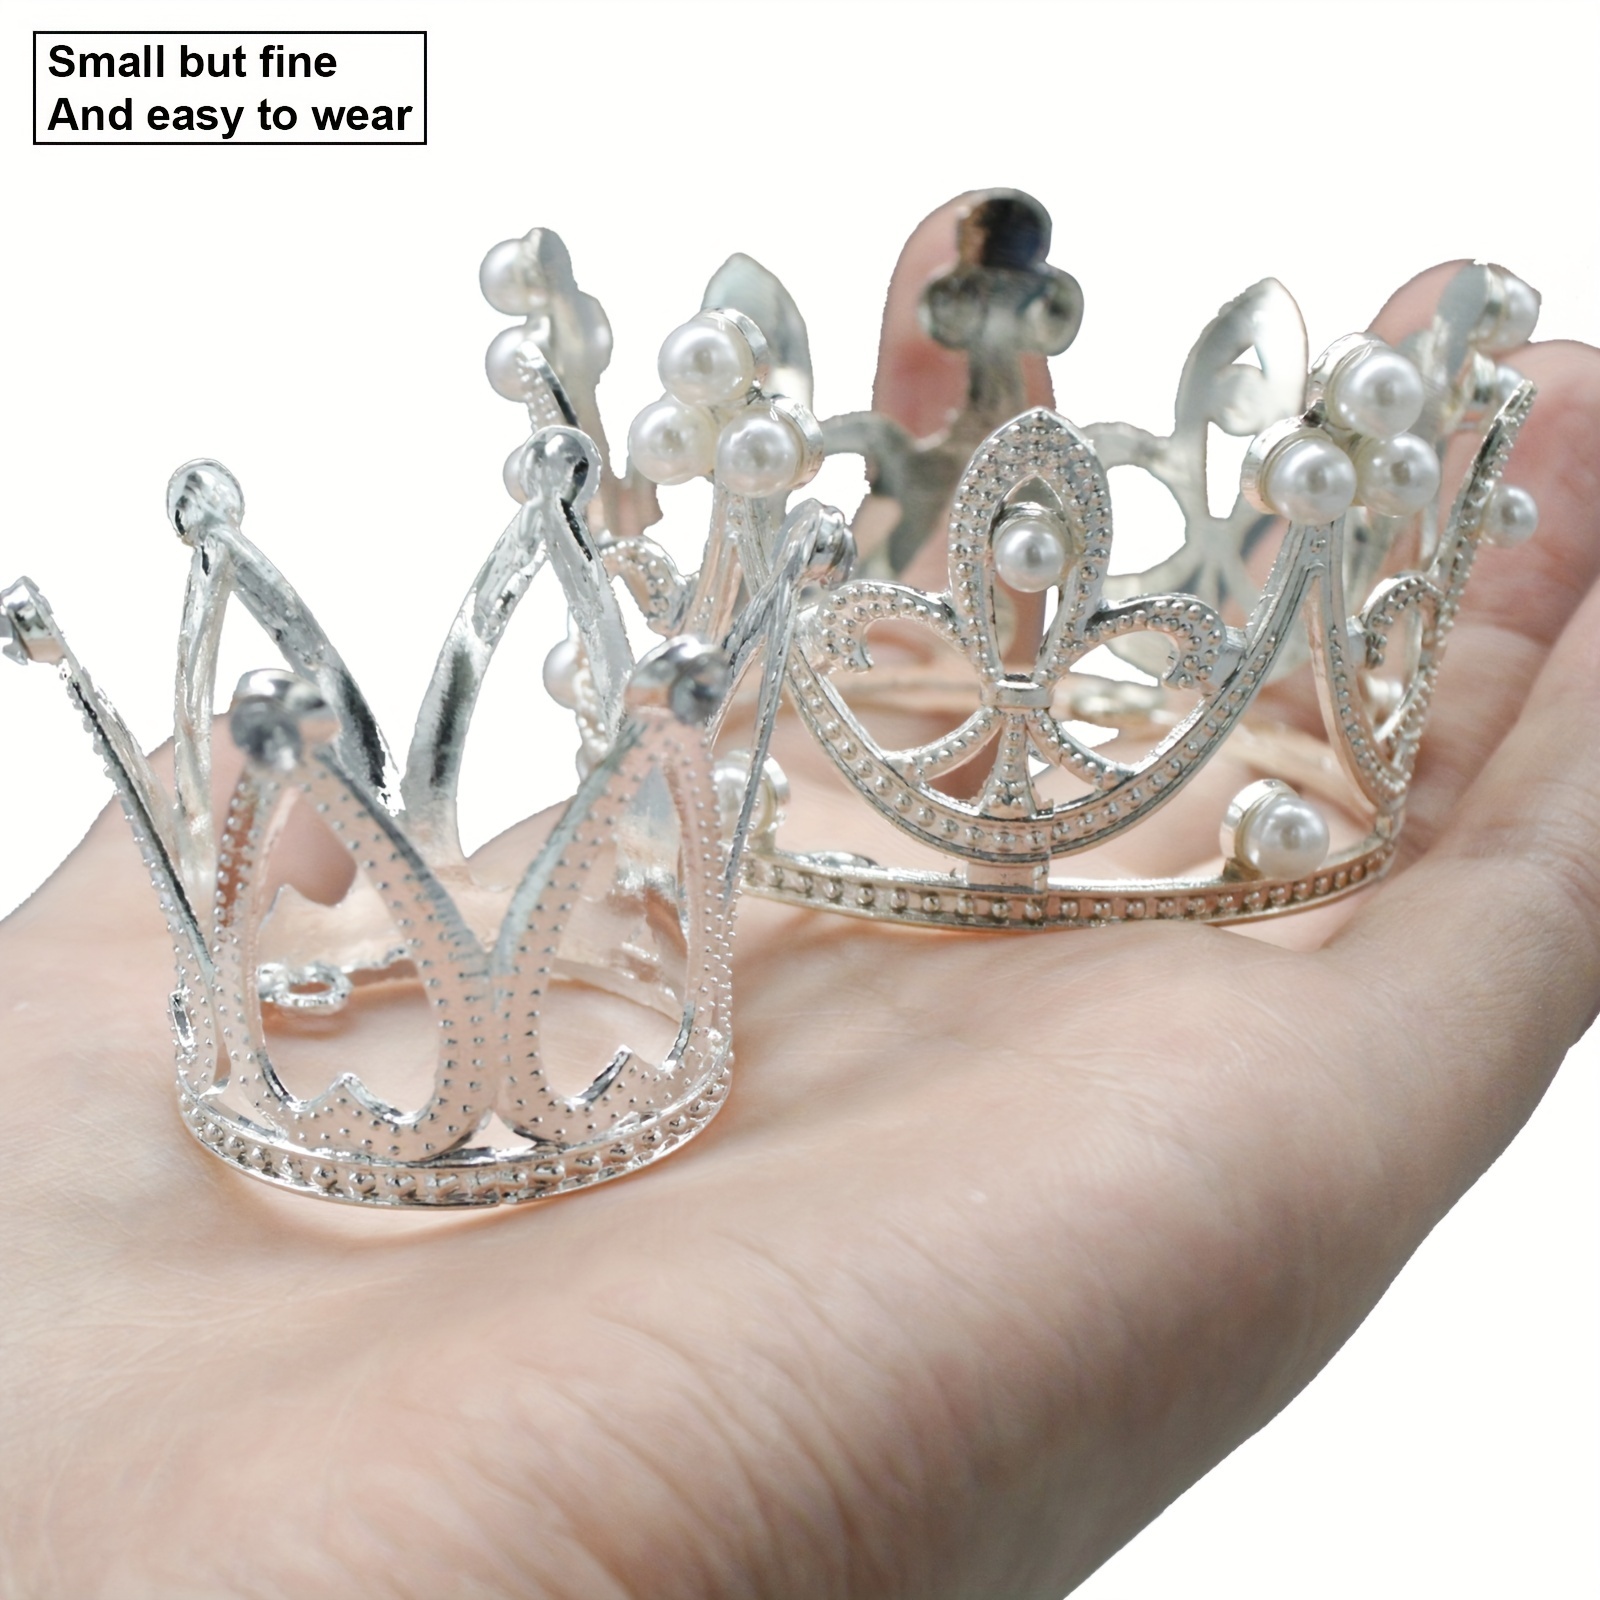 Tian Sweet 37001-RG 1.1 oz Wedding Tiara Cake Topper - Rose Gold, 1 - King  Soopers